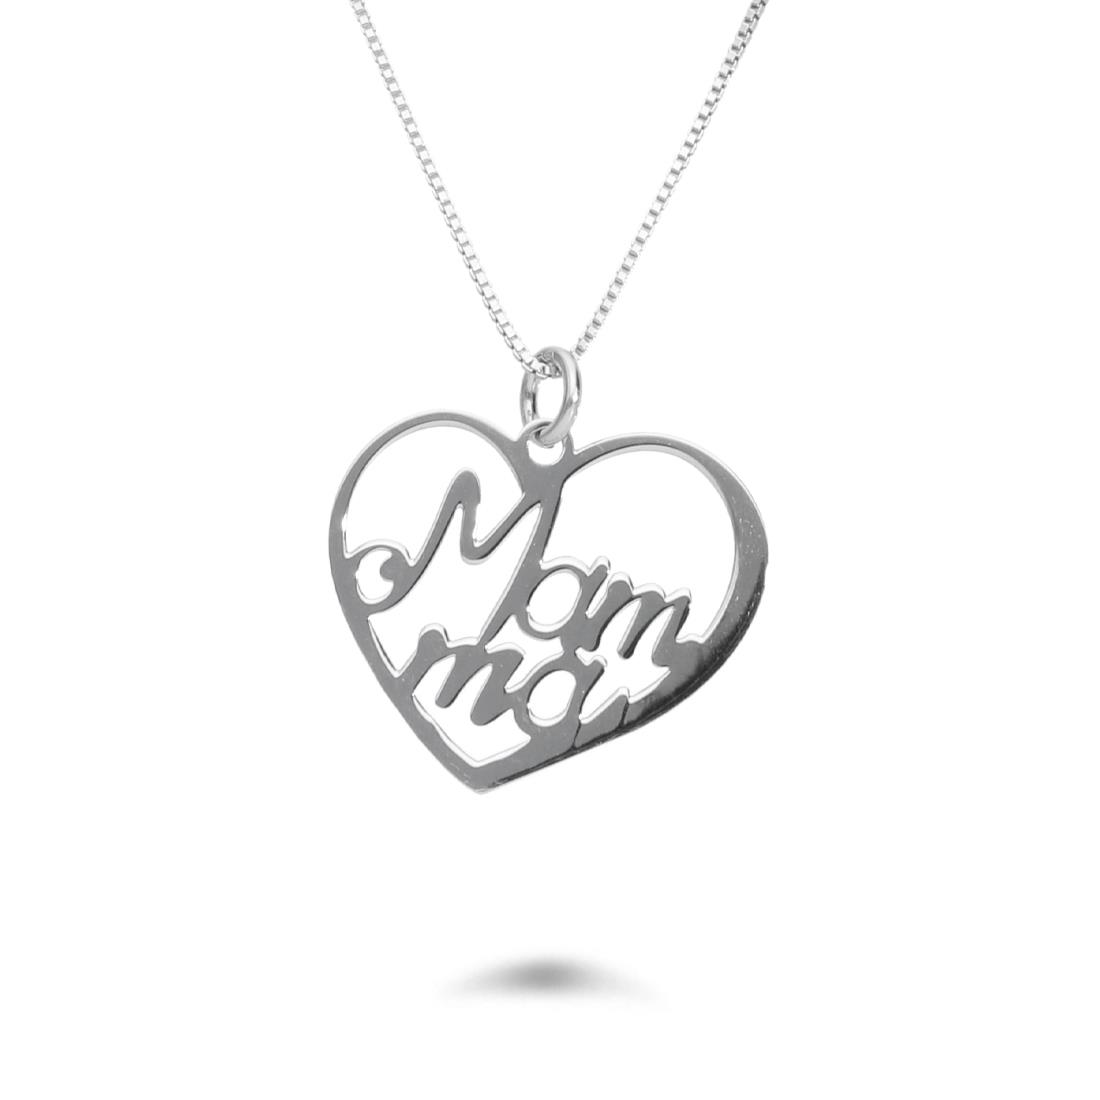 Rhodium-plated silver necklace with heart pendant - DESIDERI PREZIOSI